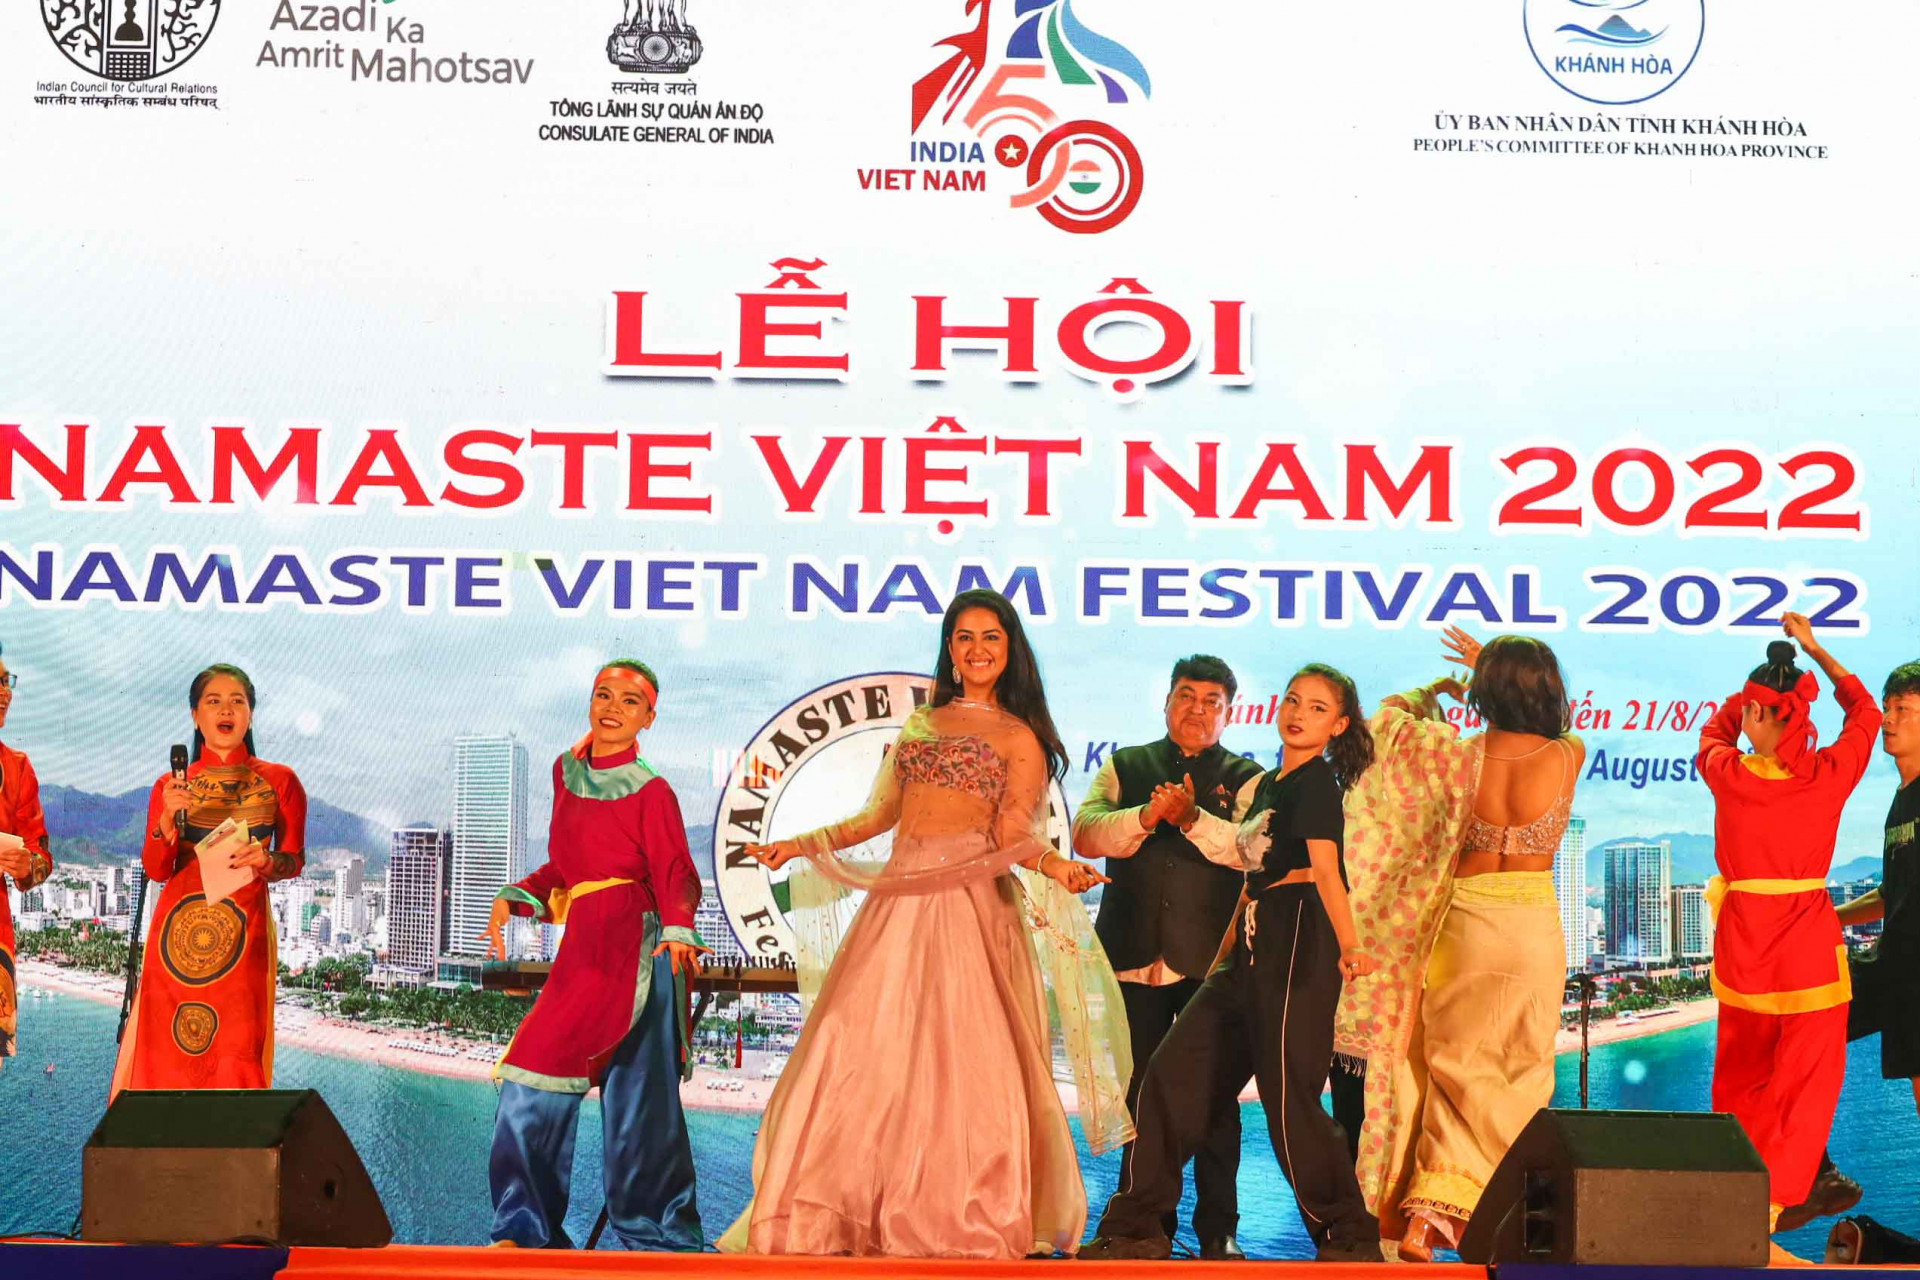 Nữ diễn viên xinh đẹp cũng sẵn sàng thể hiện khả năng nhảy múa của bản thân trên sân khấu của chương trình nghệ thuật Lễ hội Namaste Việt Nam 2022. 